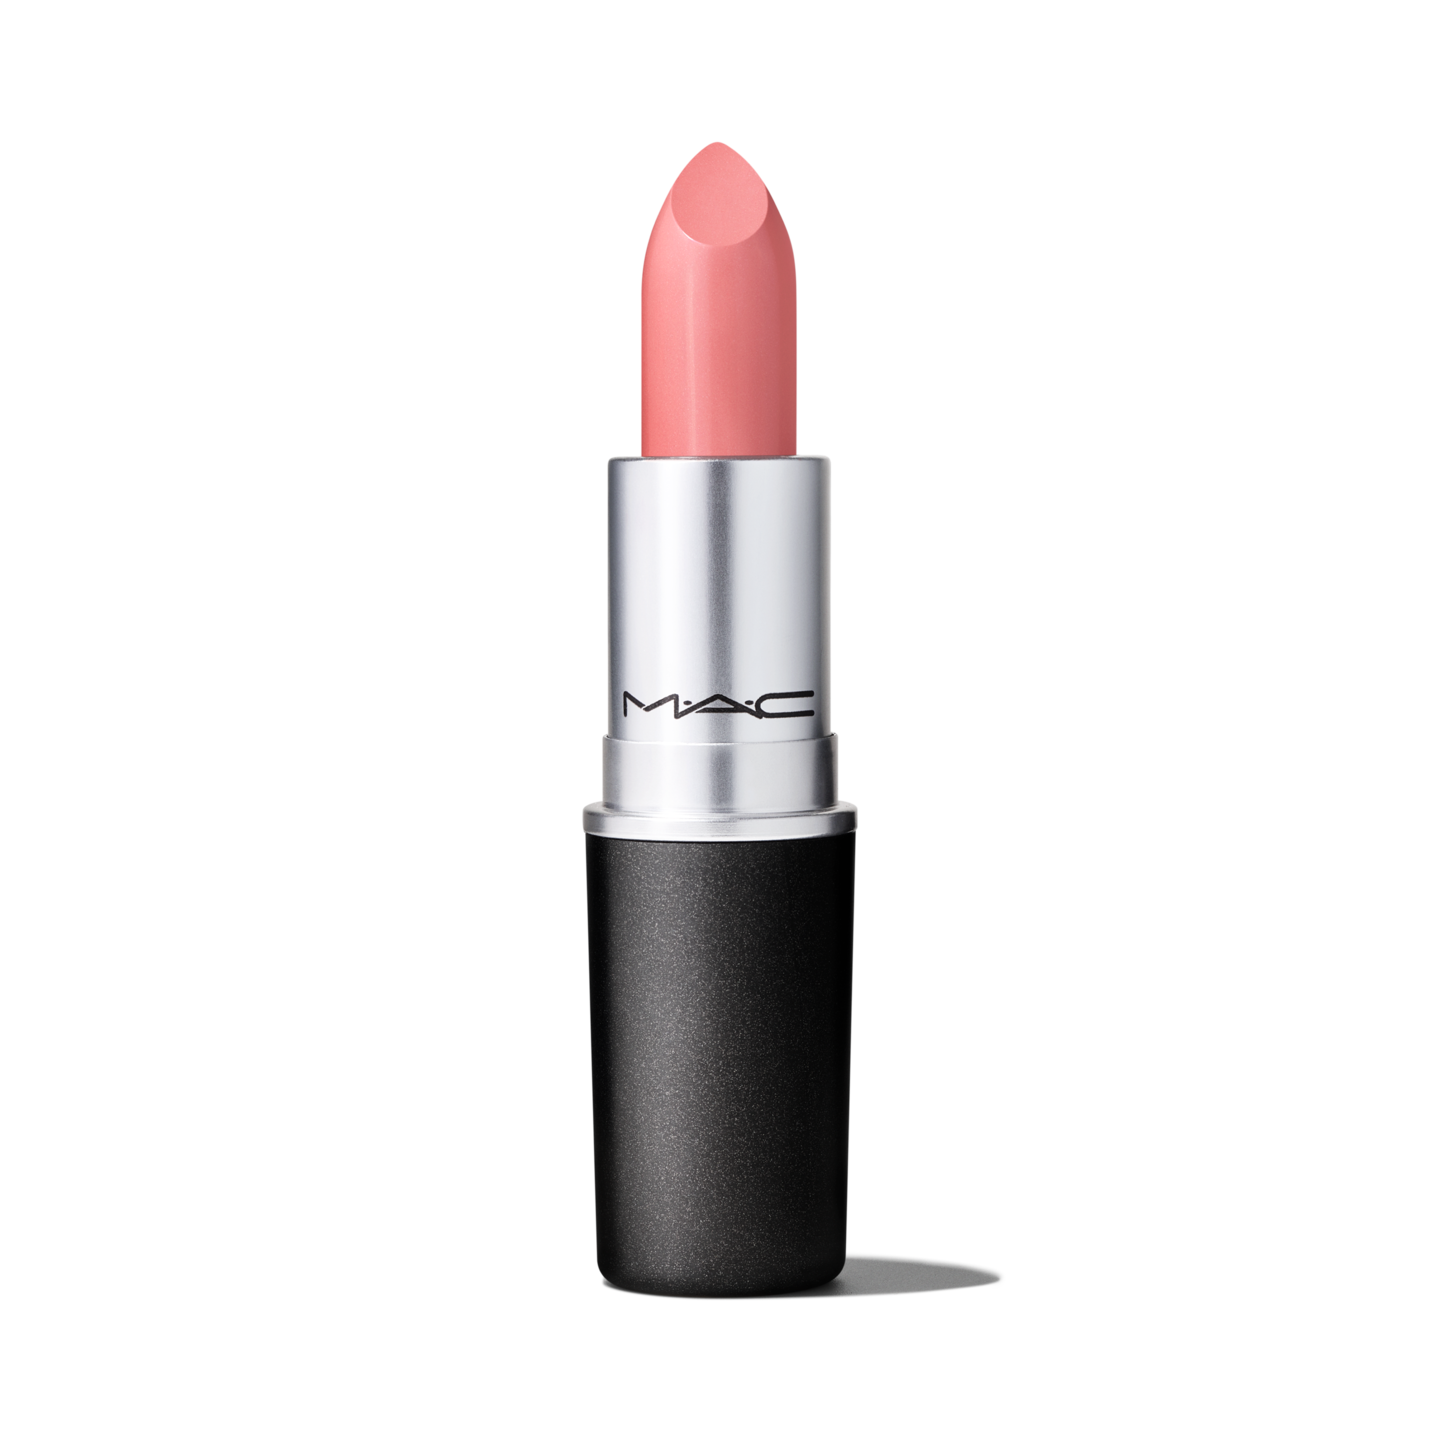 acre Koninklijke familie Vergemakkelijken Cremesheen Lipstick - Semi Gloss Finish | M·A·C Cosmetics 